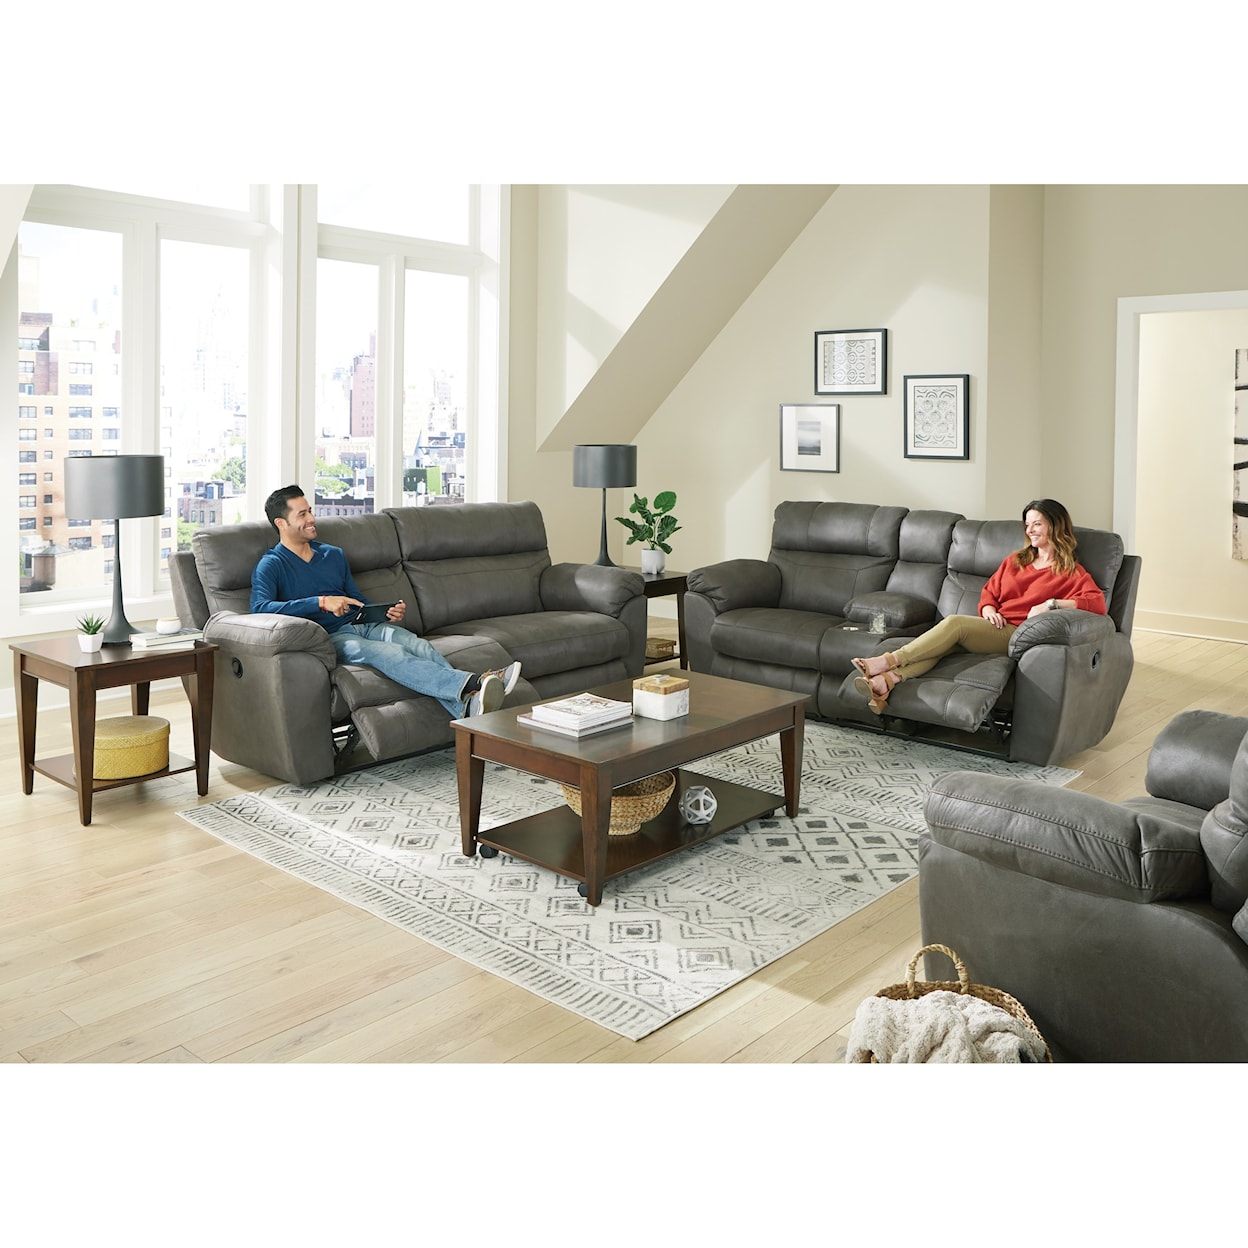 Catnapper Charcoal Reclining Sofa